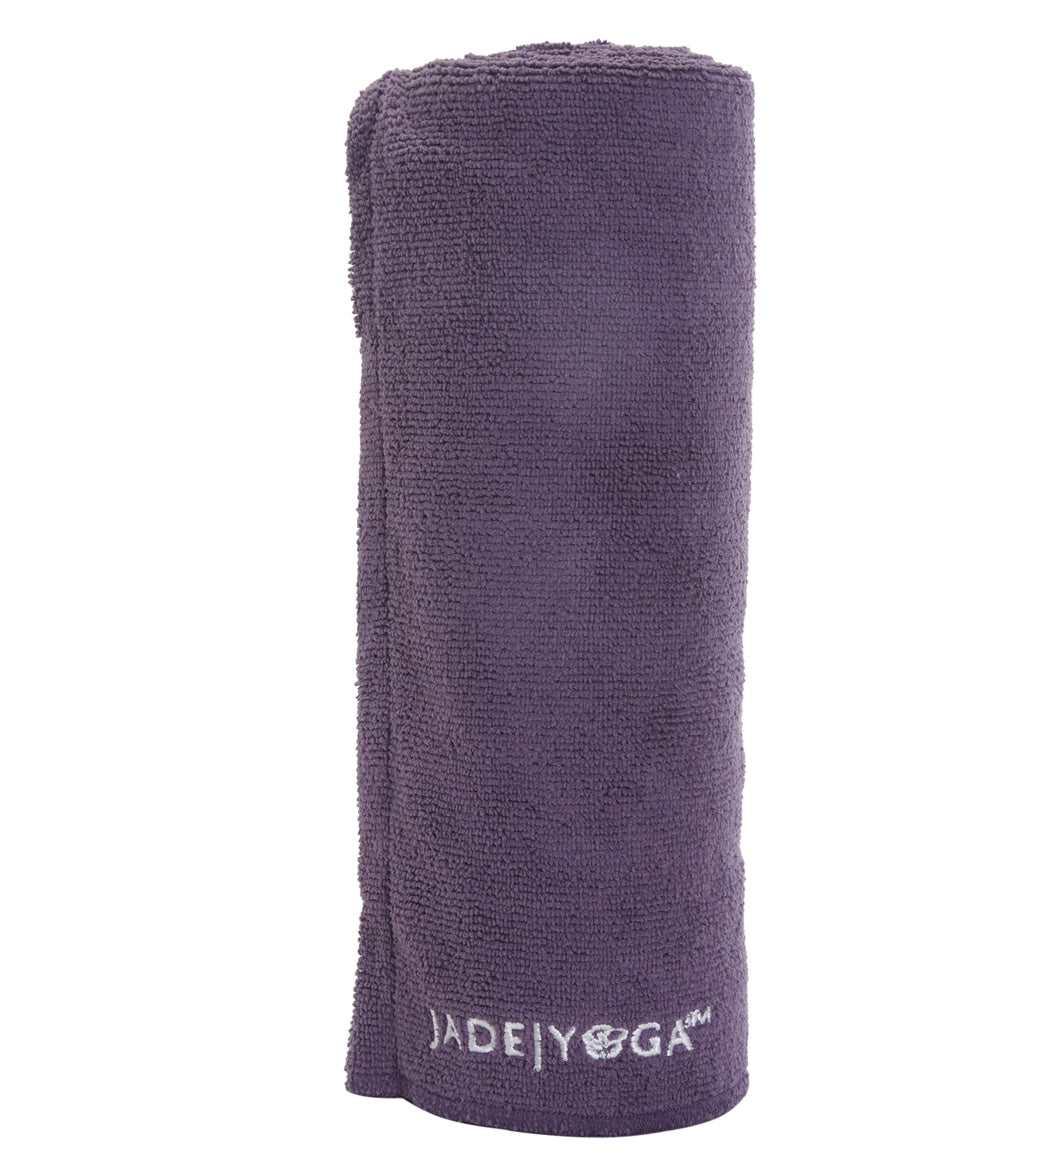 Jade Yoga Microfiber Mat Towel 72